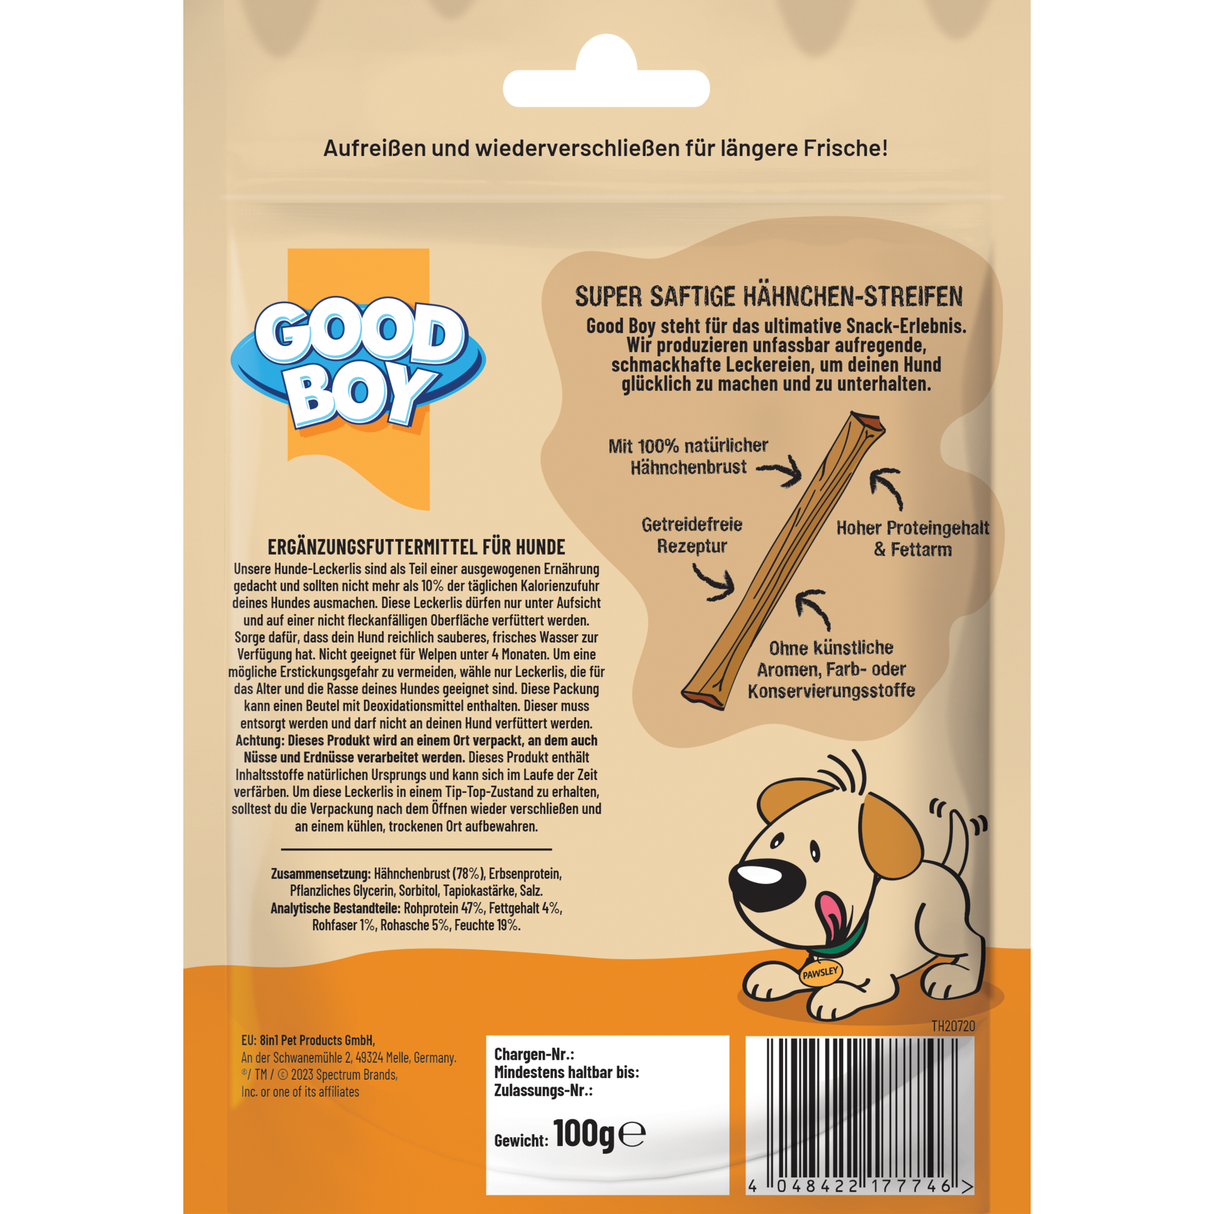 Good Boy Hähnchenfleisch-Streifen (100g) - Karton mit 10 Packungen